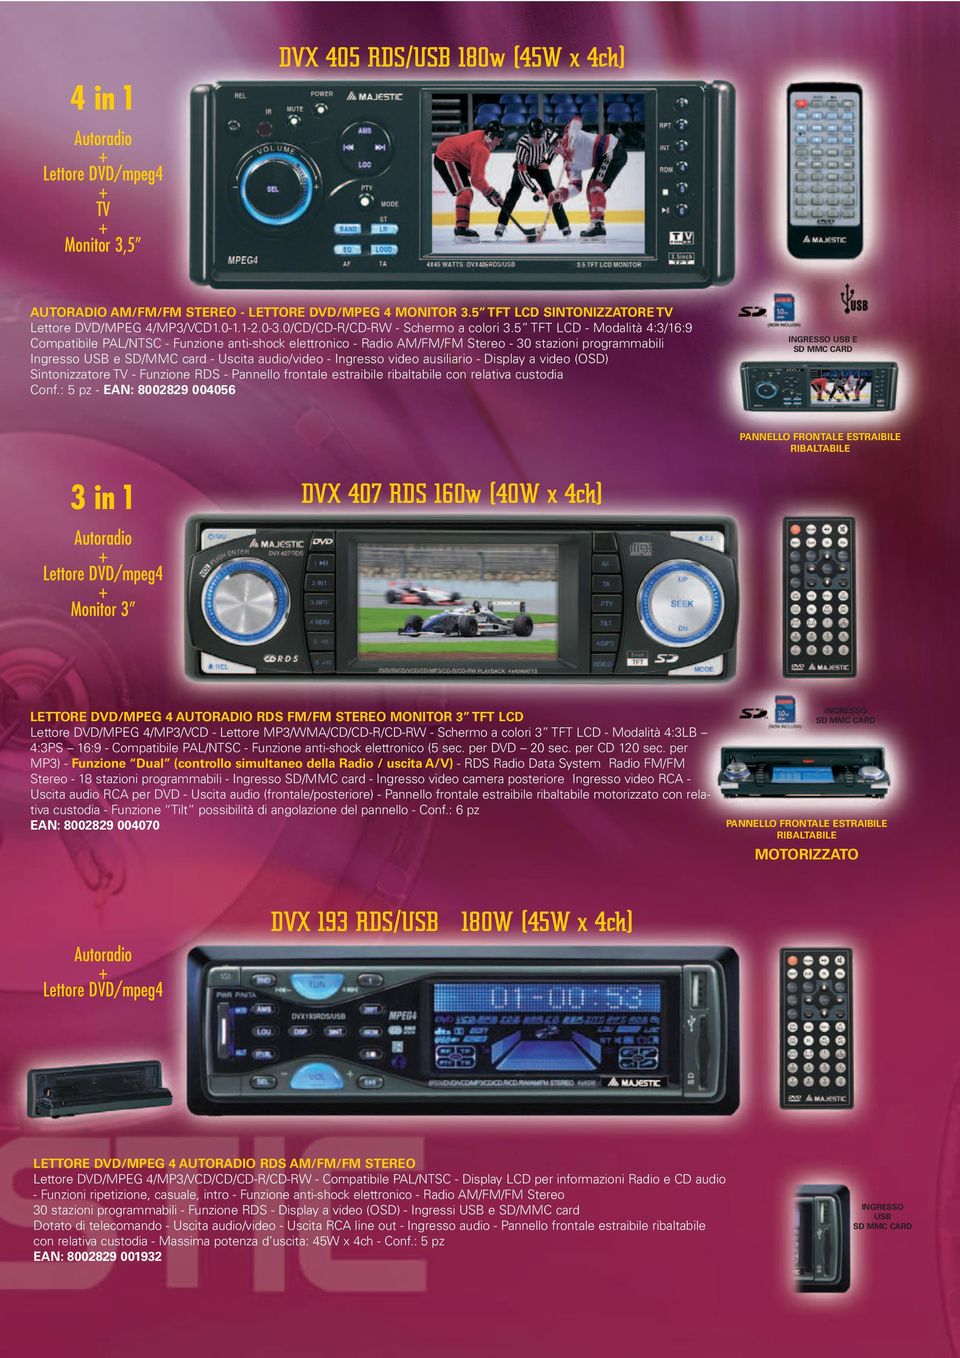 5 TFT LCD - Modalità 4:3/16:9 Compatibile PAL/NTSC - Funzione anti-shock elettronico - Radio AM/FM/FM Stereo - 30 stazioni programmabili Ingresso USB e SD/MMC card - Uscita audio/video - Ingresso